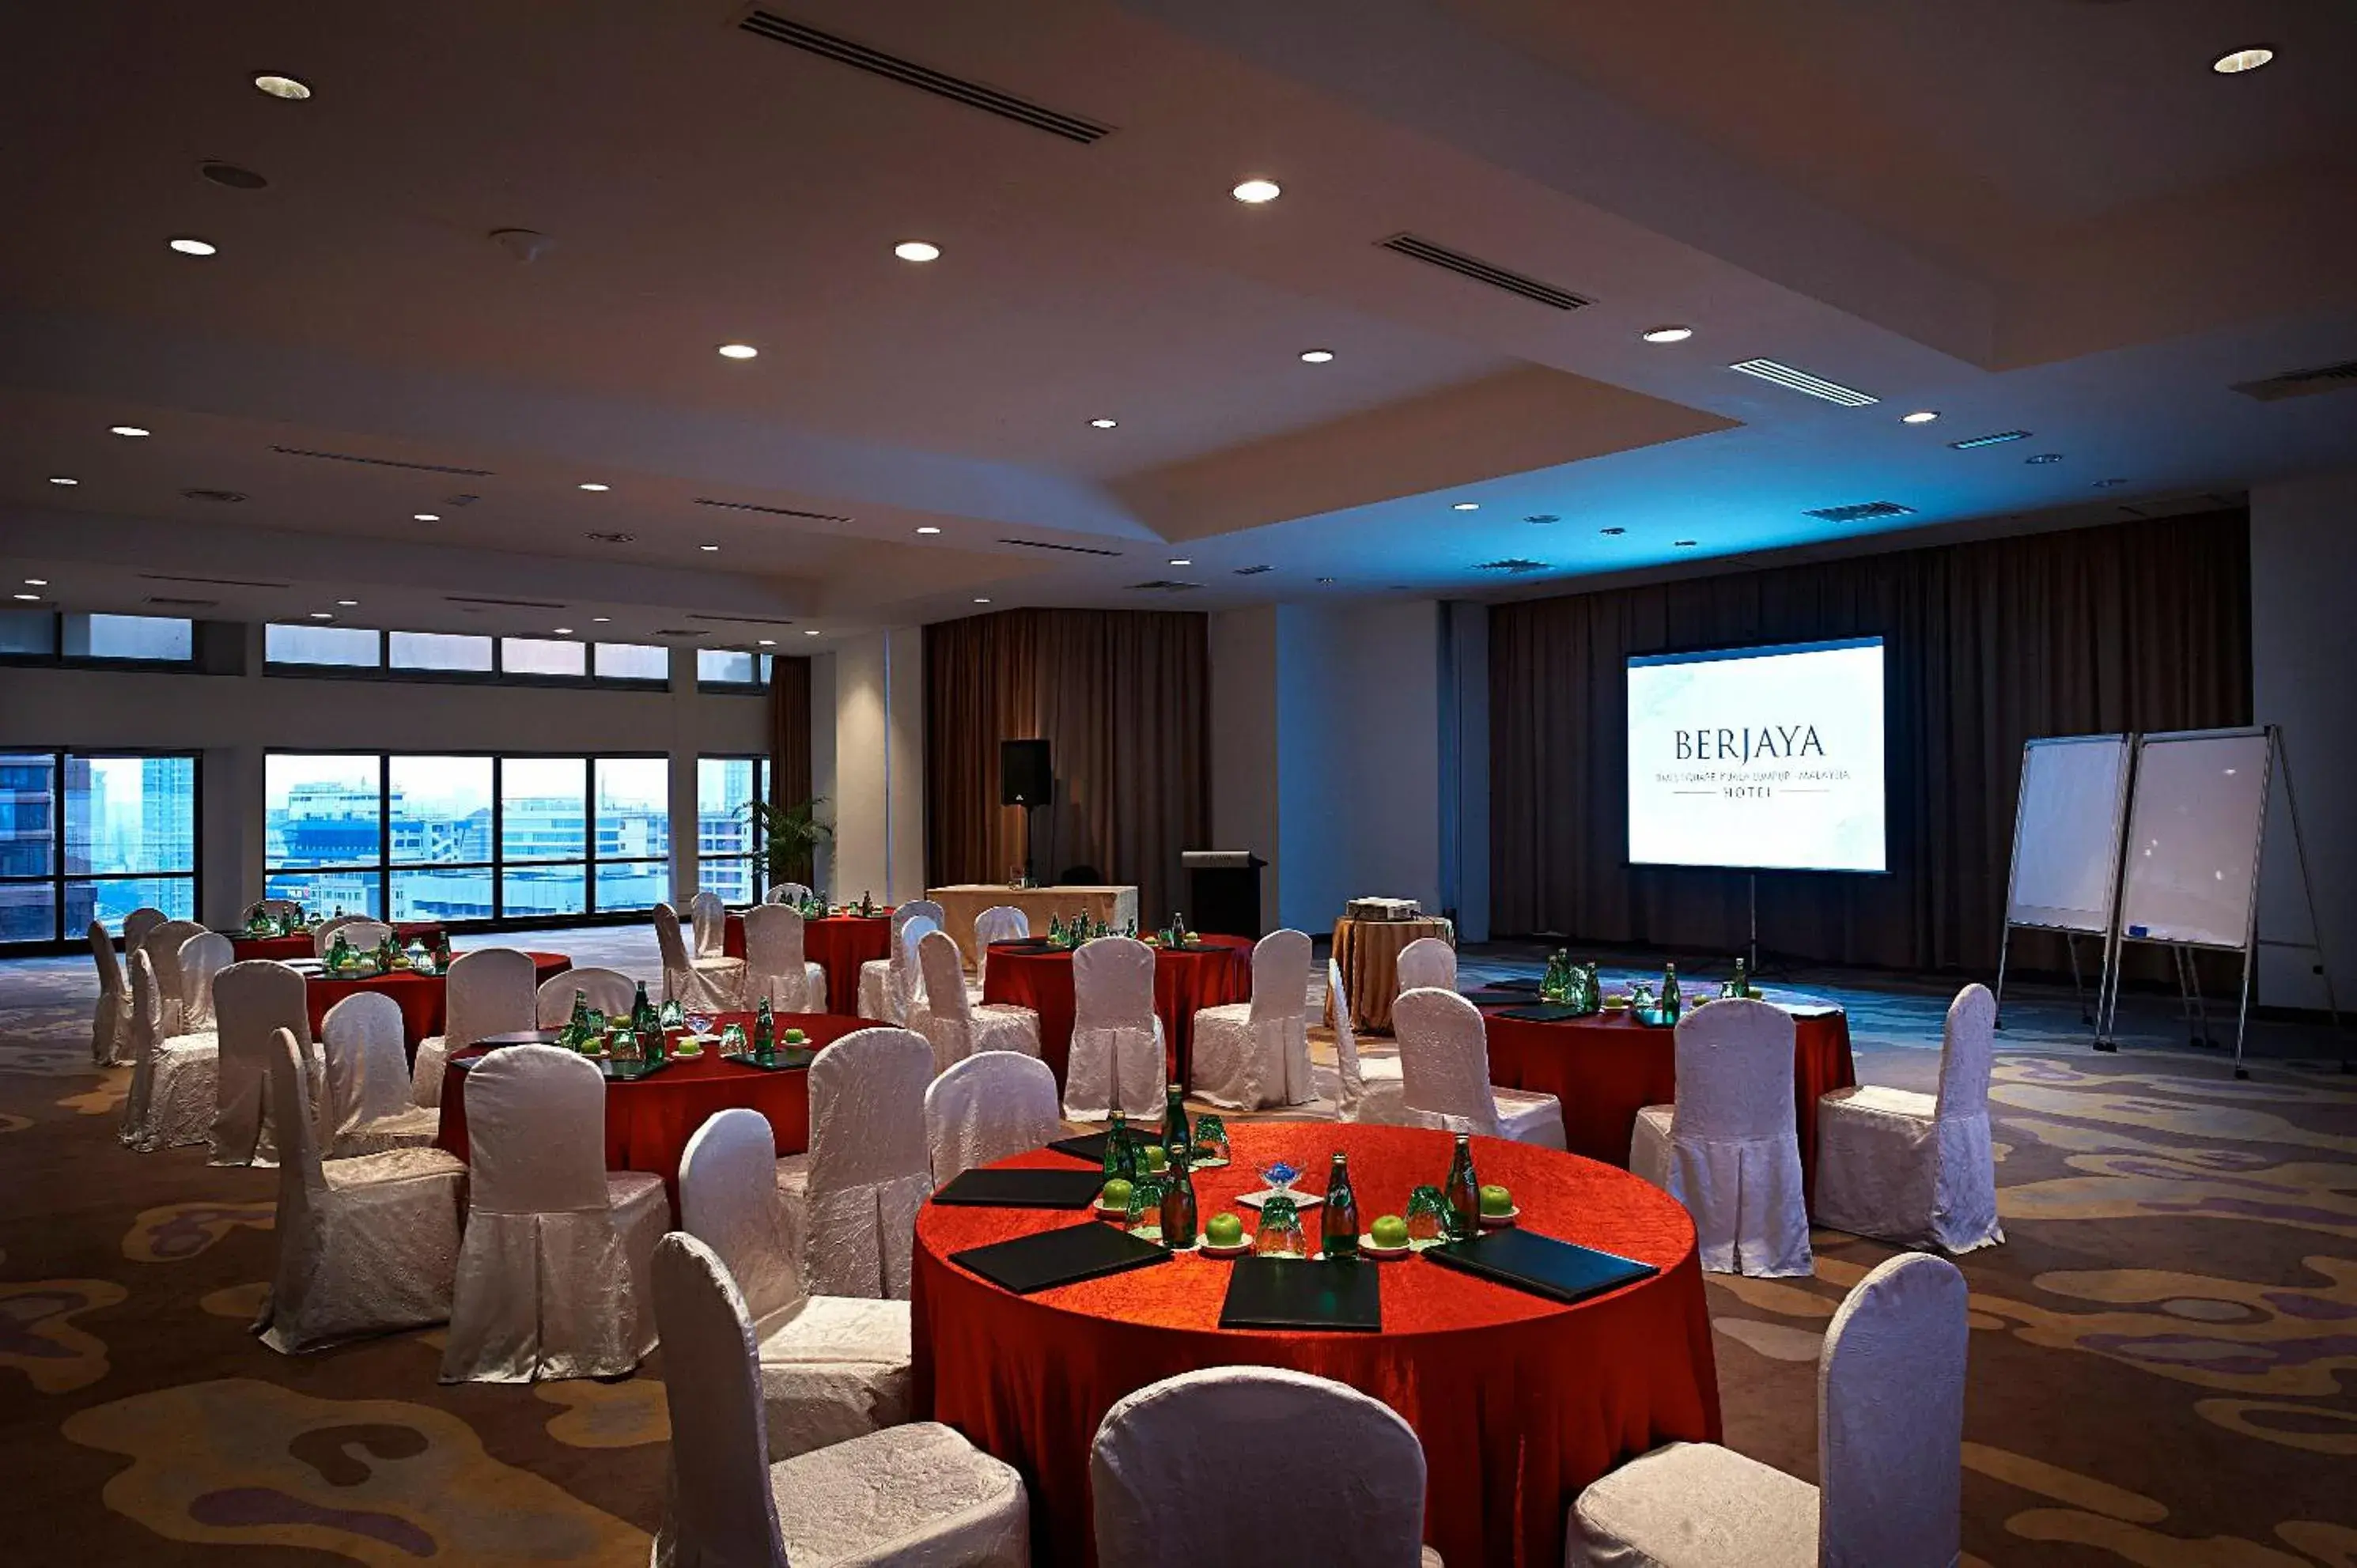 Banquet/Function facilities, Banquet Facilities in Berjaya Times Square Hotel, Kuala Lumpur